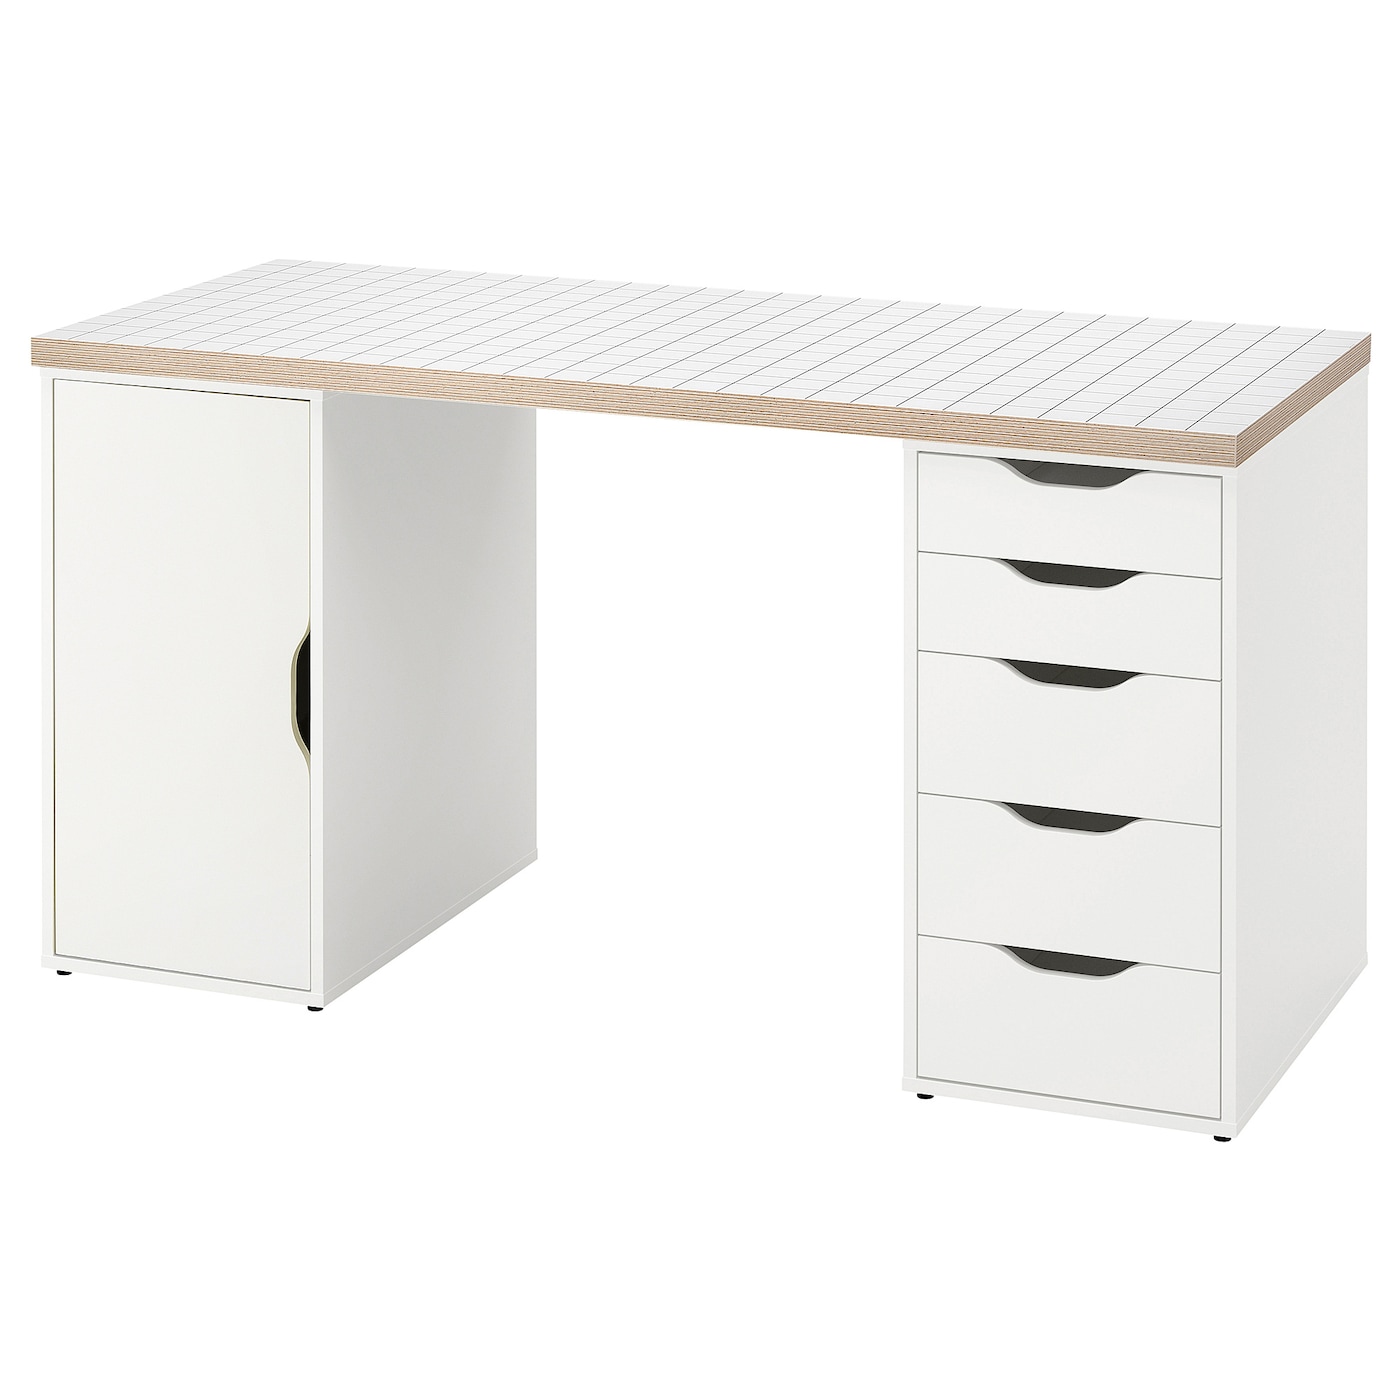 Письменный стол с ящиками - IKEA ALEX/АЛЕКС ИКЕА, 140x60 см, белый антрацит